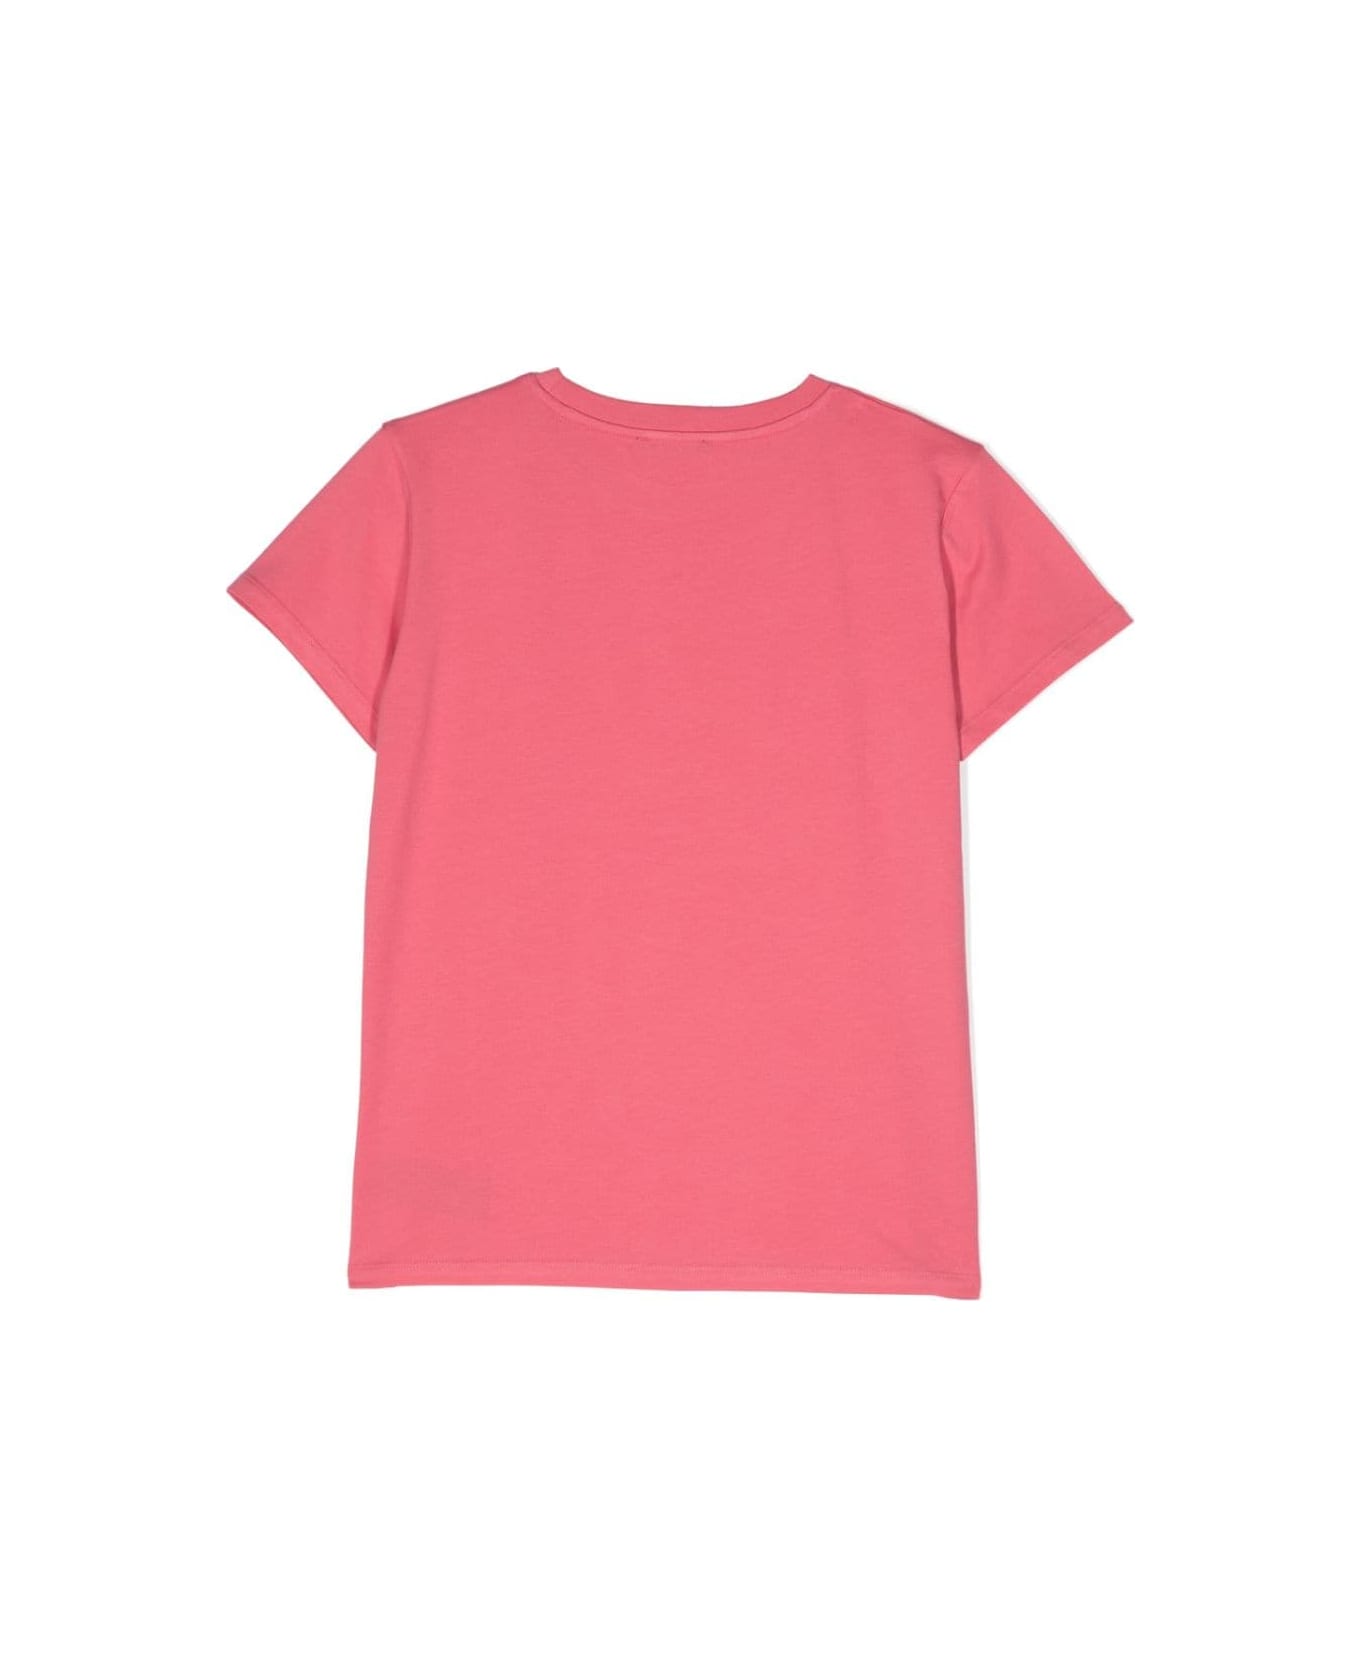 Balmain T-shirt Fucsia In Jersey Di Cotone Bambina - Fucsia Tシャツ＆ポロシャツ